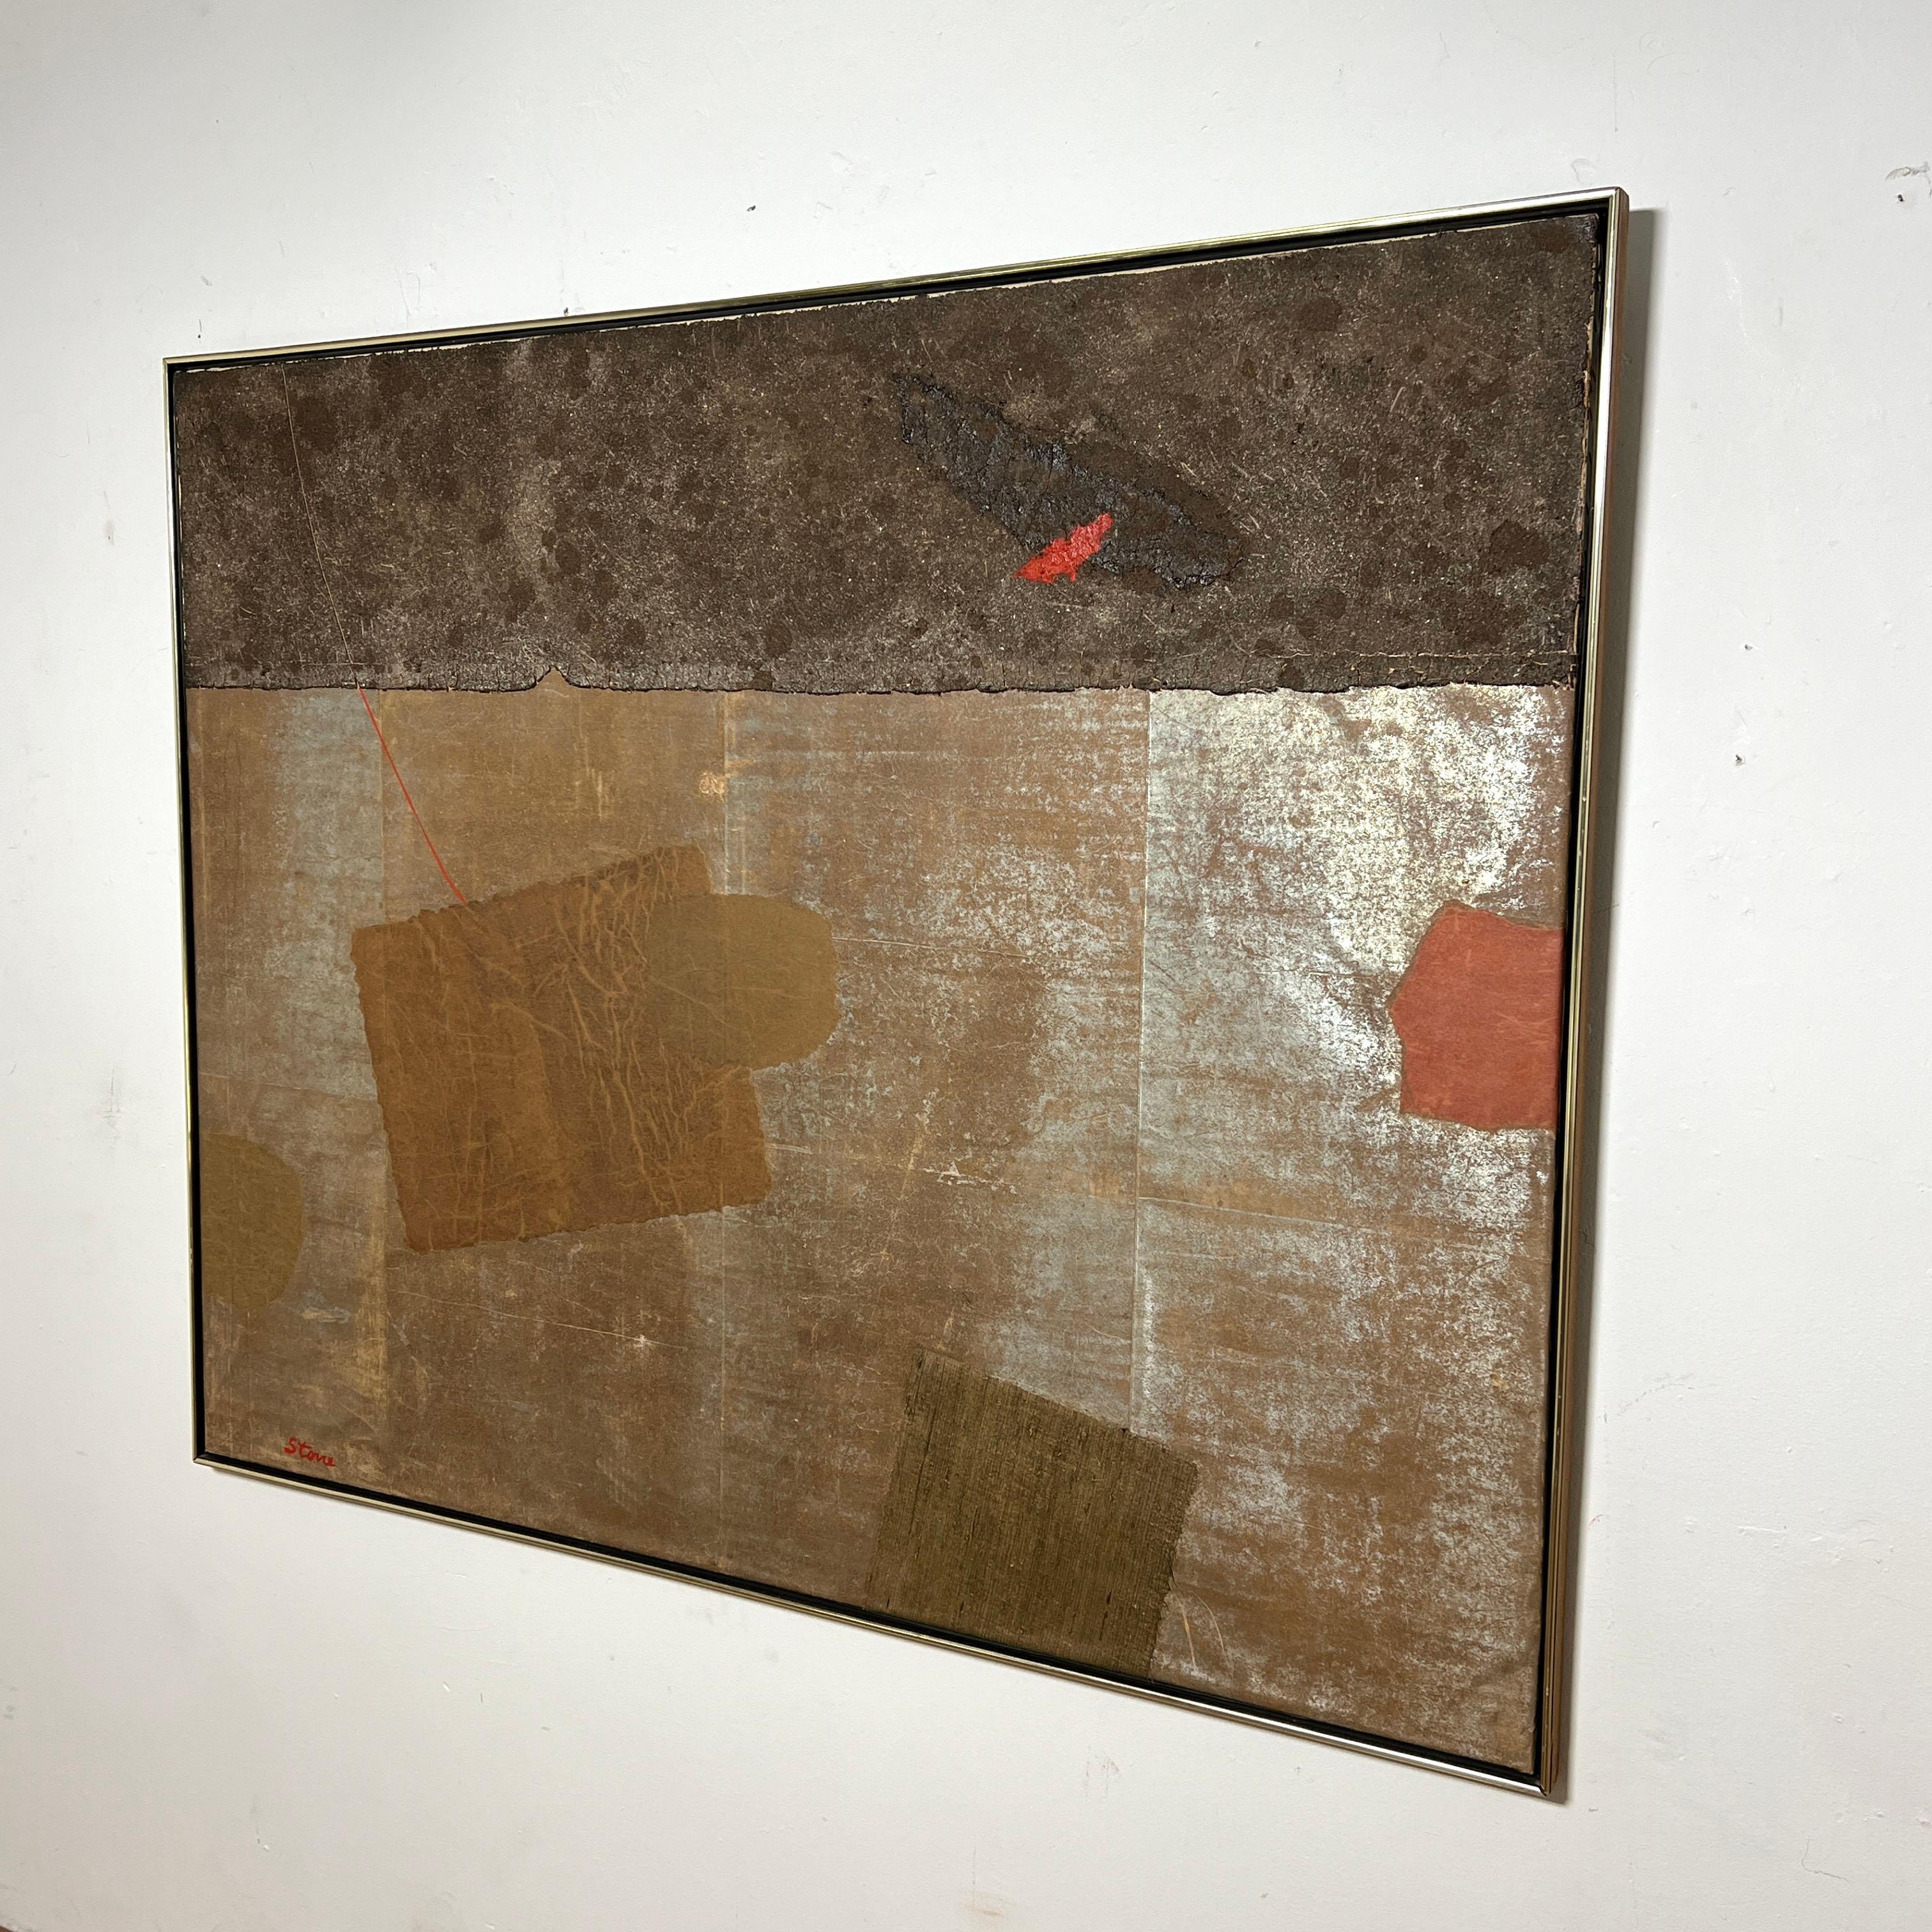 Œuvre abstraite mixte à grande échelle (1,80 m sur 1,80 m) sur toile, peinture et papier, vers les années 1970, signée Stone.